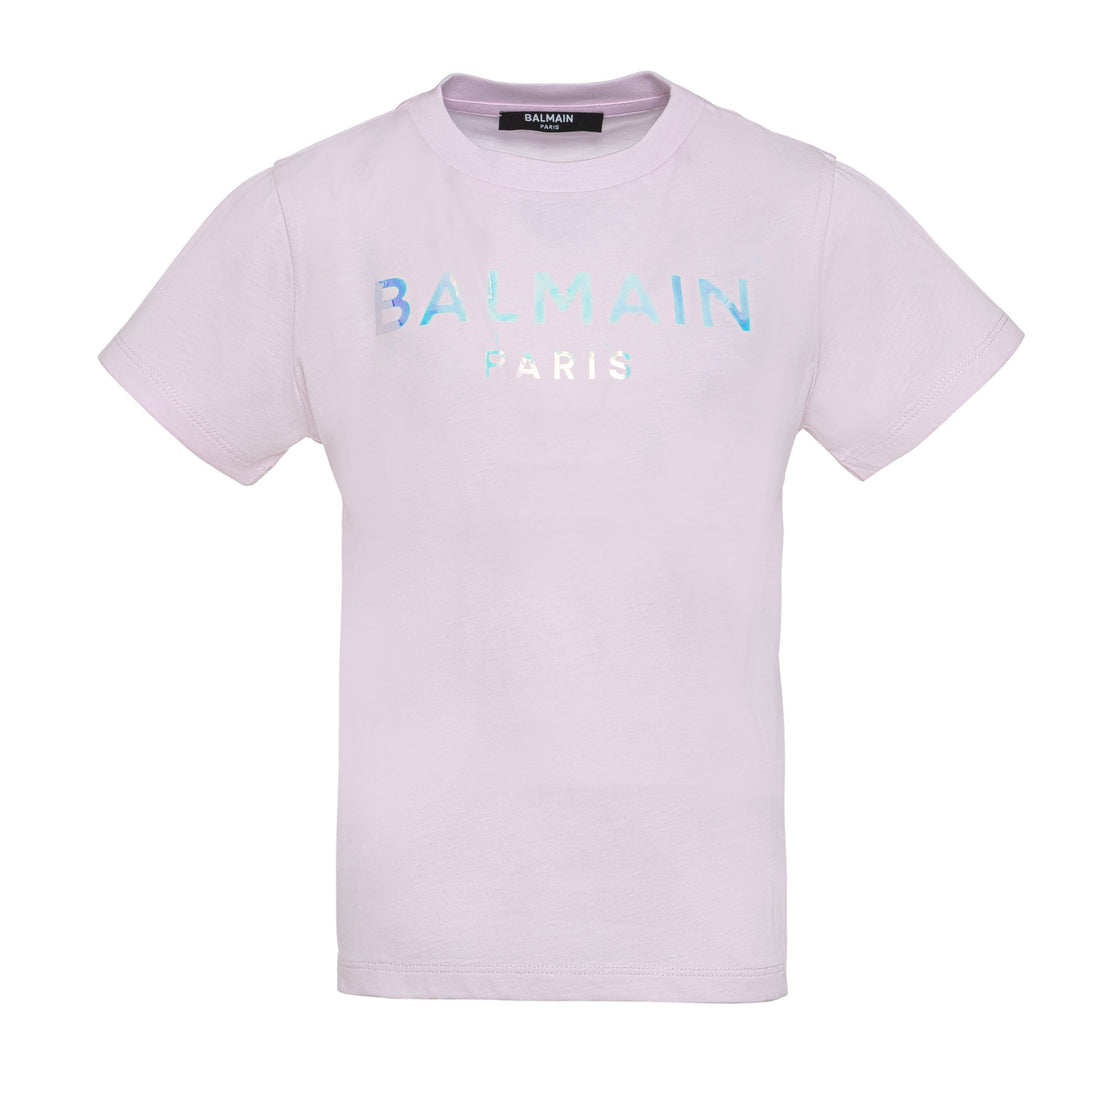 Balmain T-Shirt/Top Style: Bs8A41540